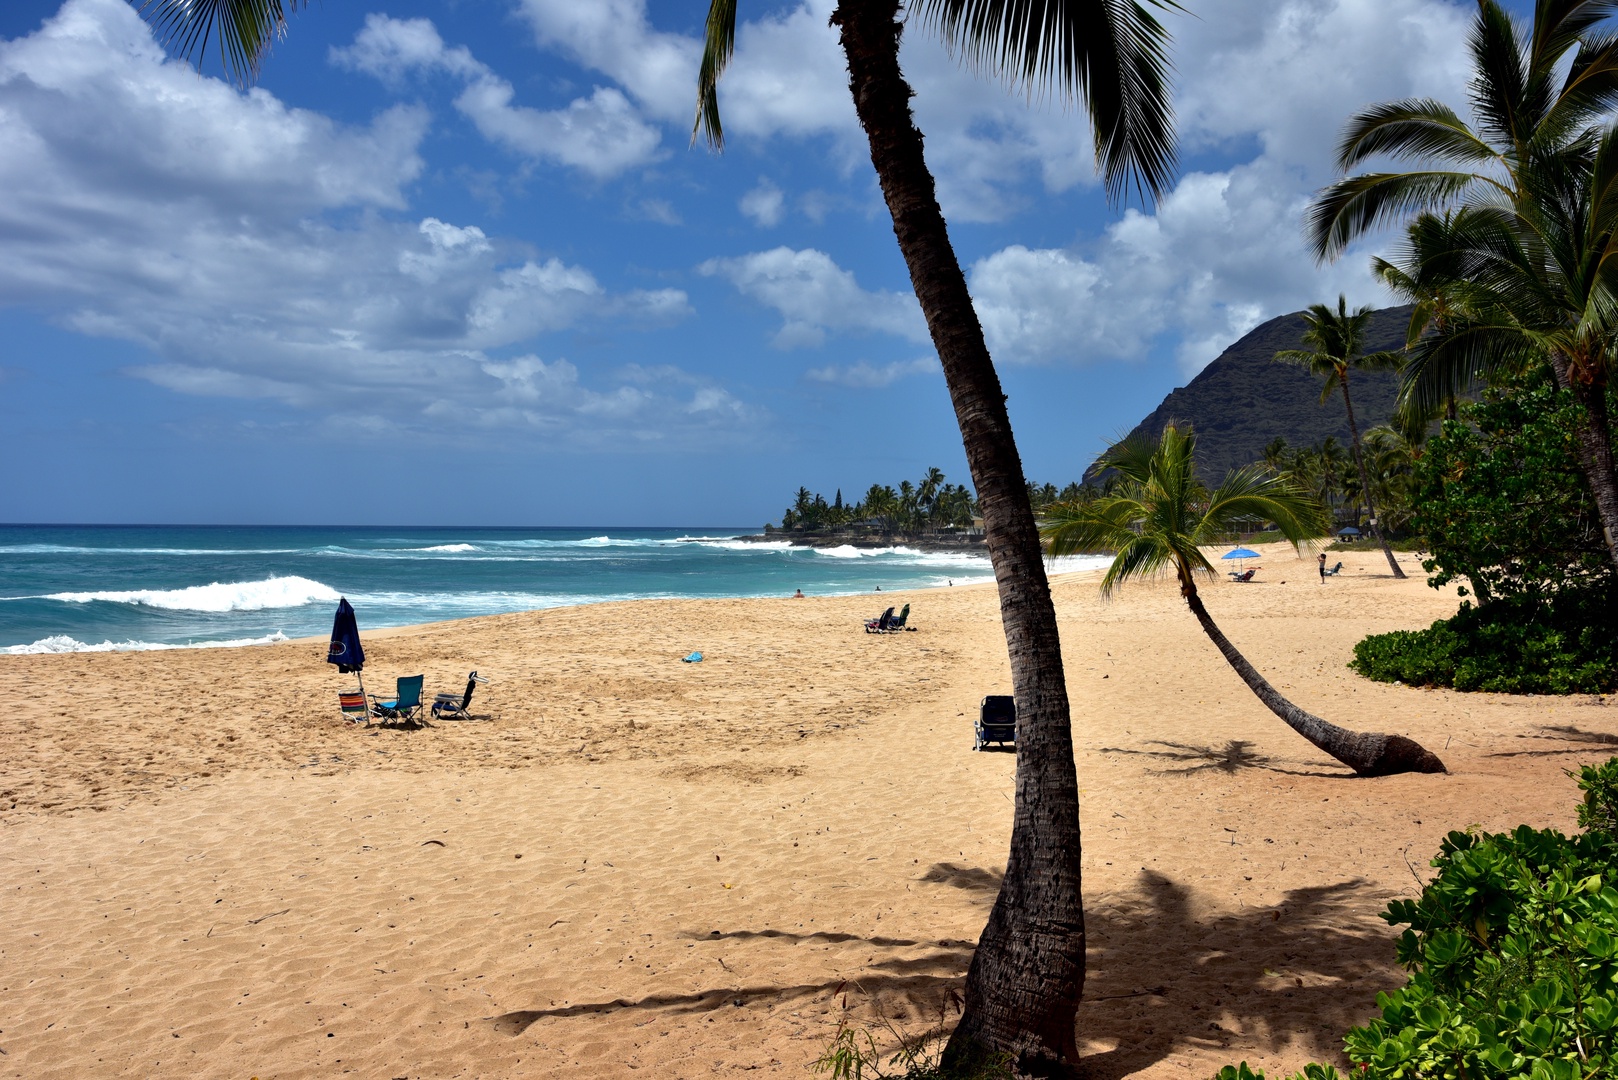 Waianae Vacation Rentals, Makaha - Hawaiian Princess - 305 - Take a picnic and stay for awhile at the beach.